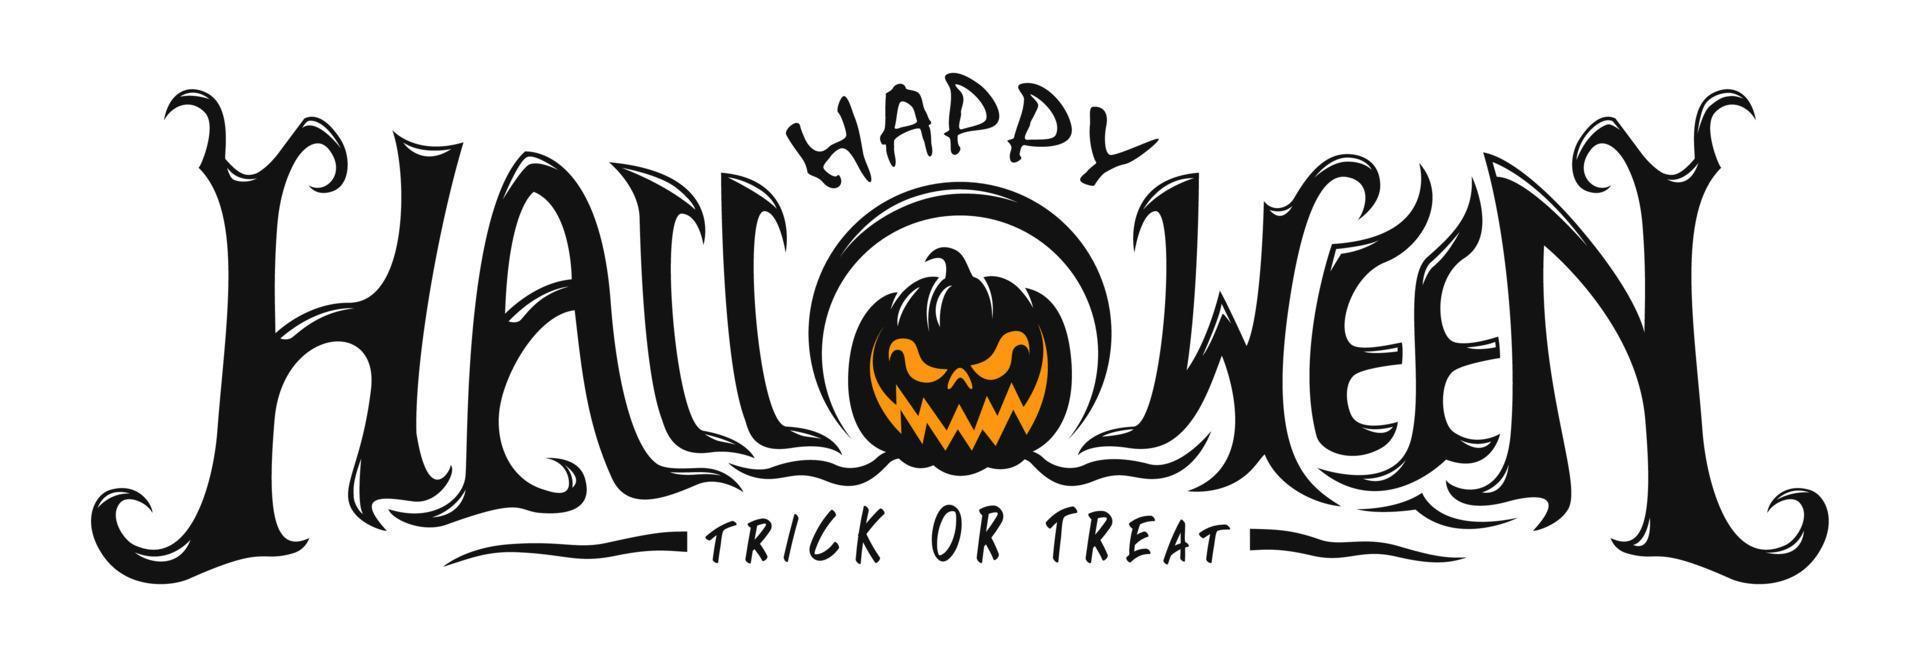 Happy Halloween Text Banner vector